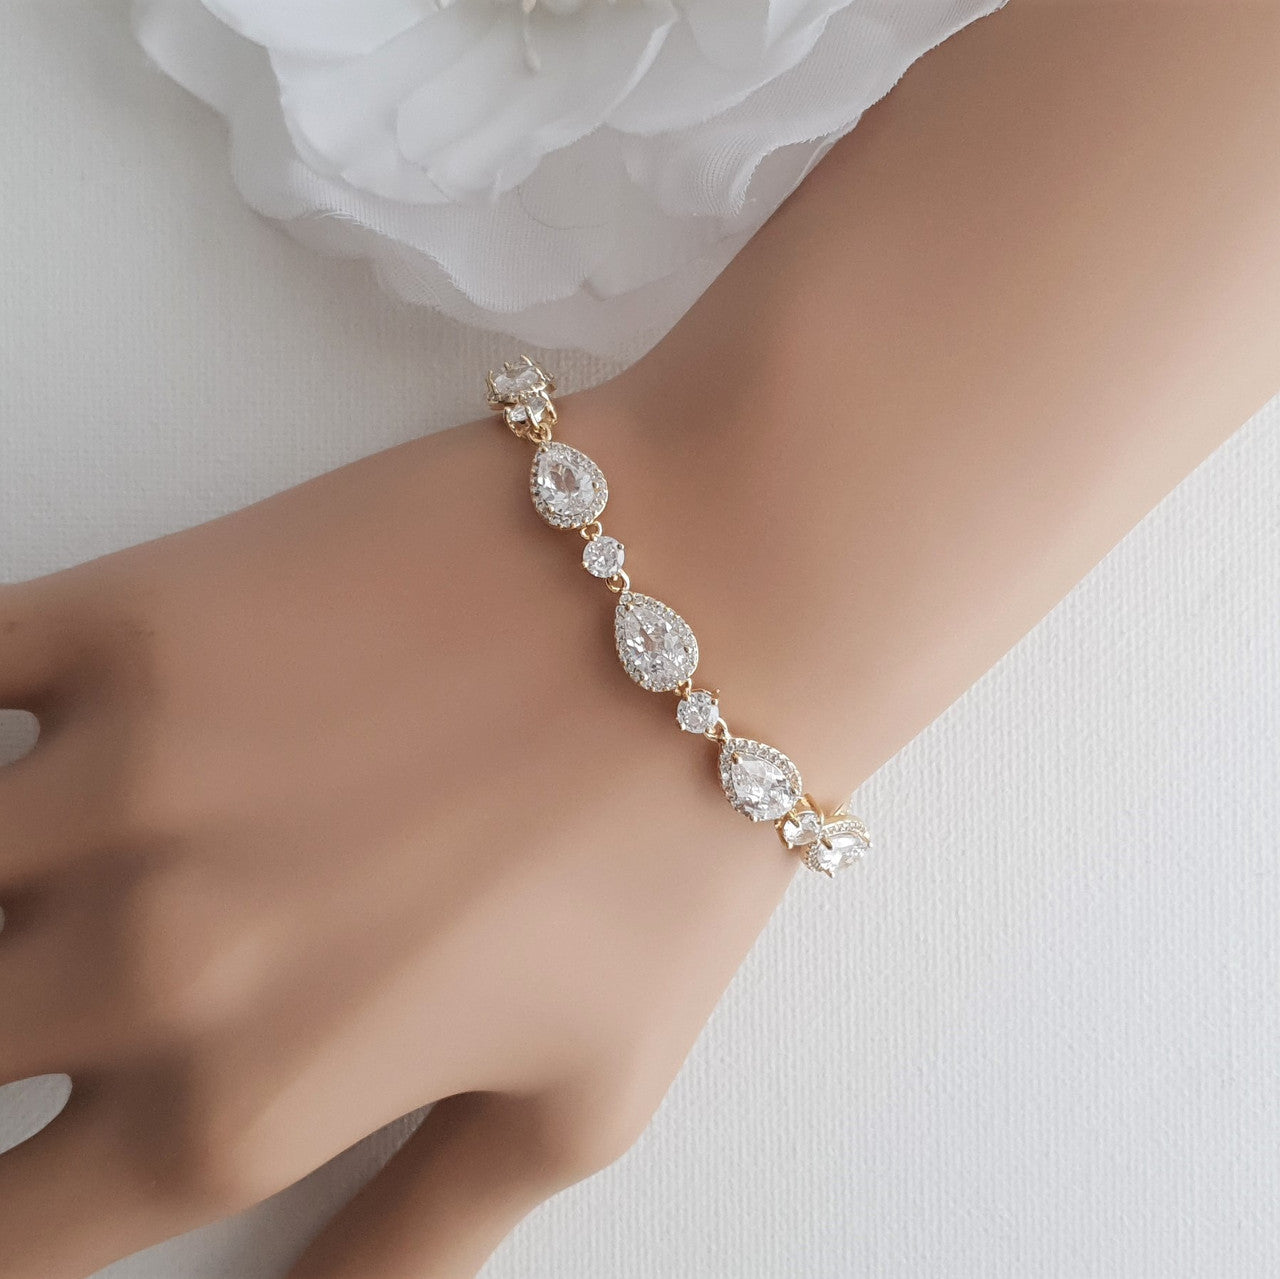 Silver Wedding Bracelet with Teardrops-Emma